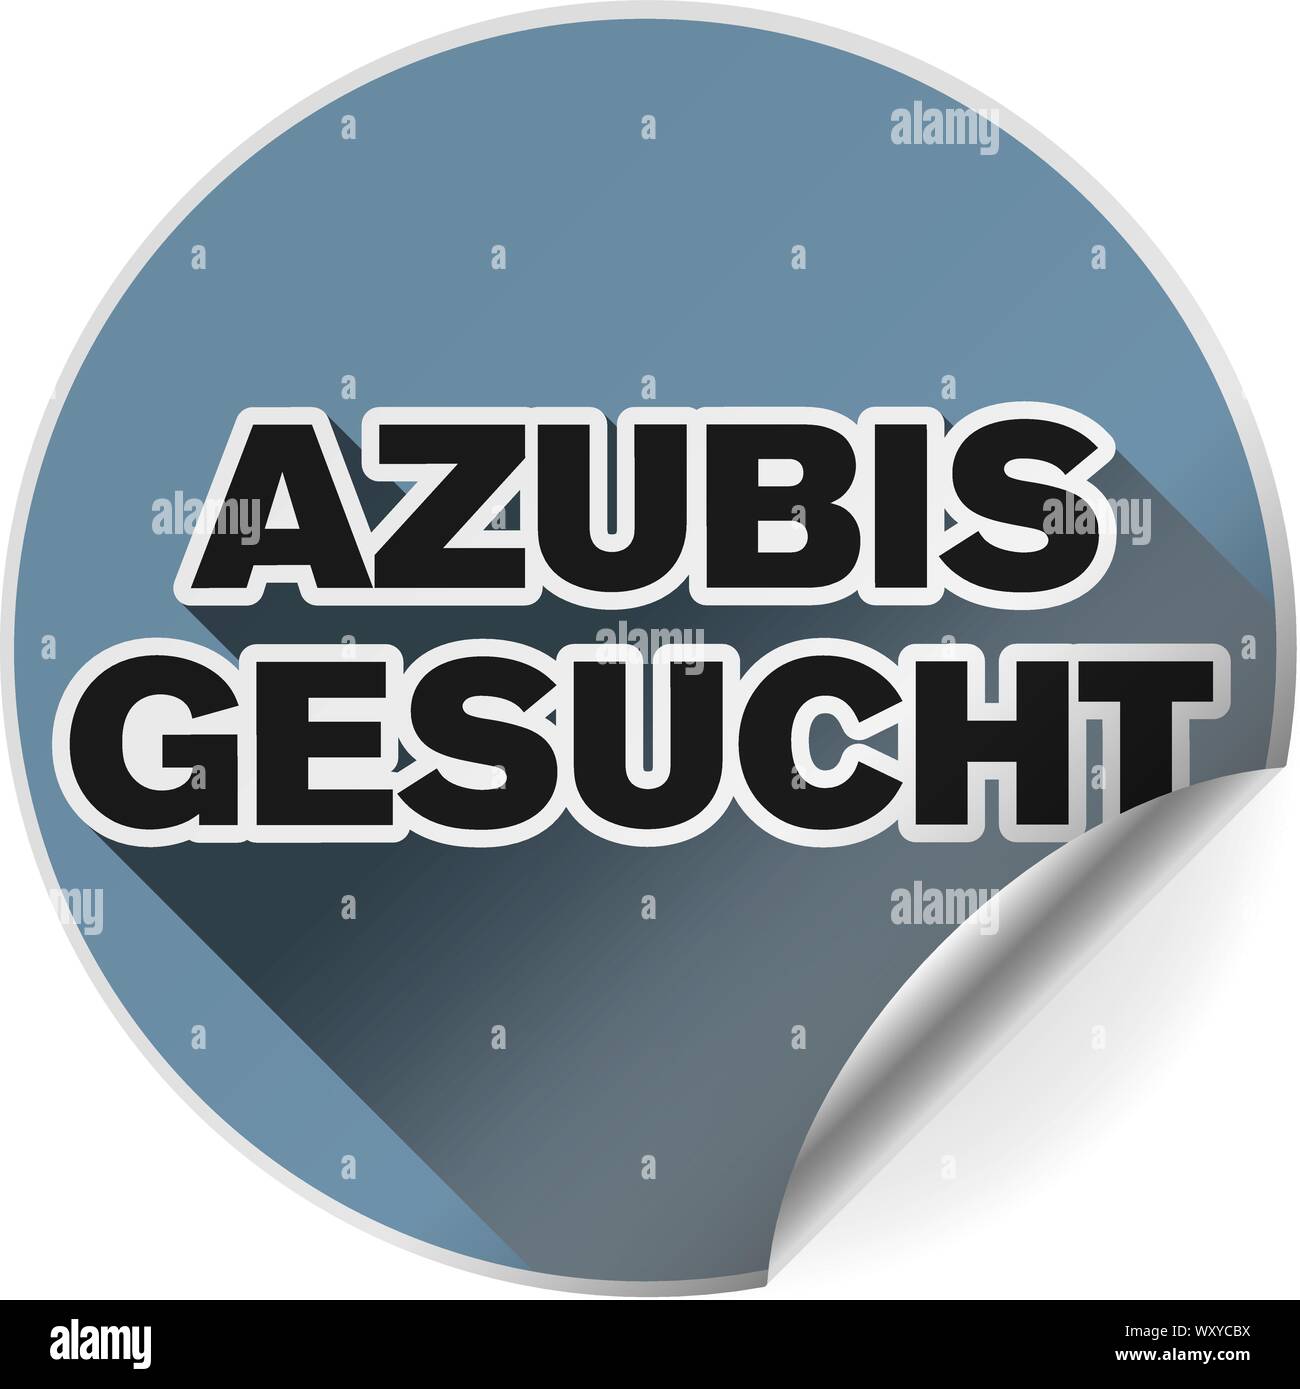 Runde Abzeichen oder Aufkleber mit Text AZUBIS GESUCHT, Deutsch für Auszubildende wollte, Vector Illustration Stock Vektor